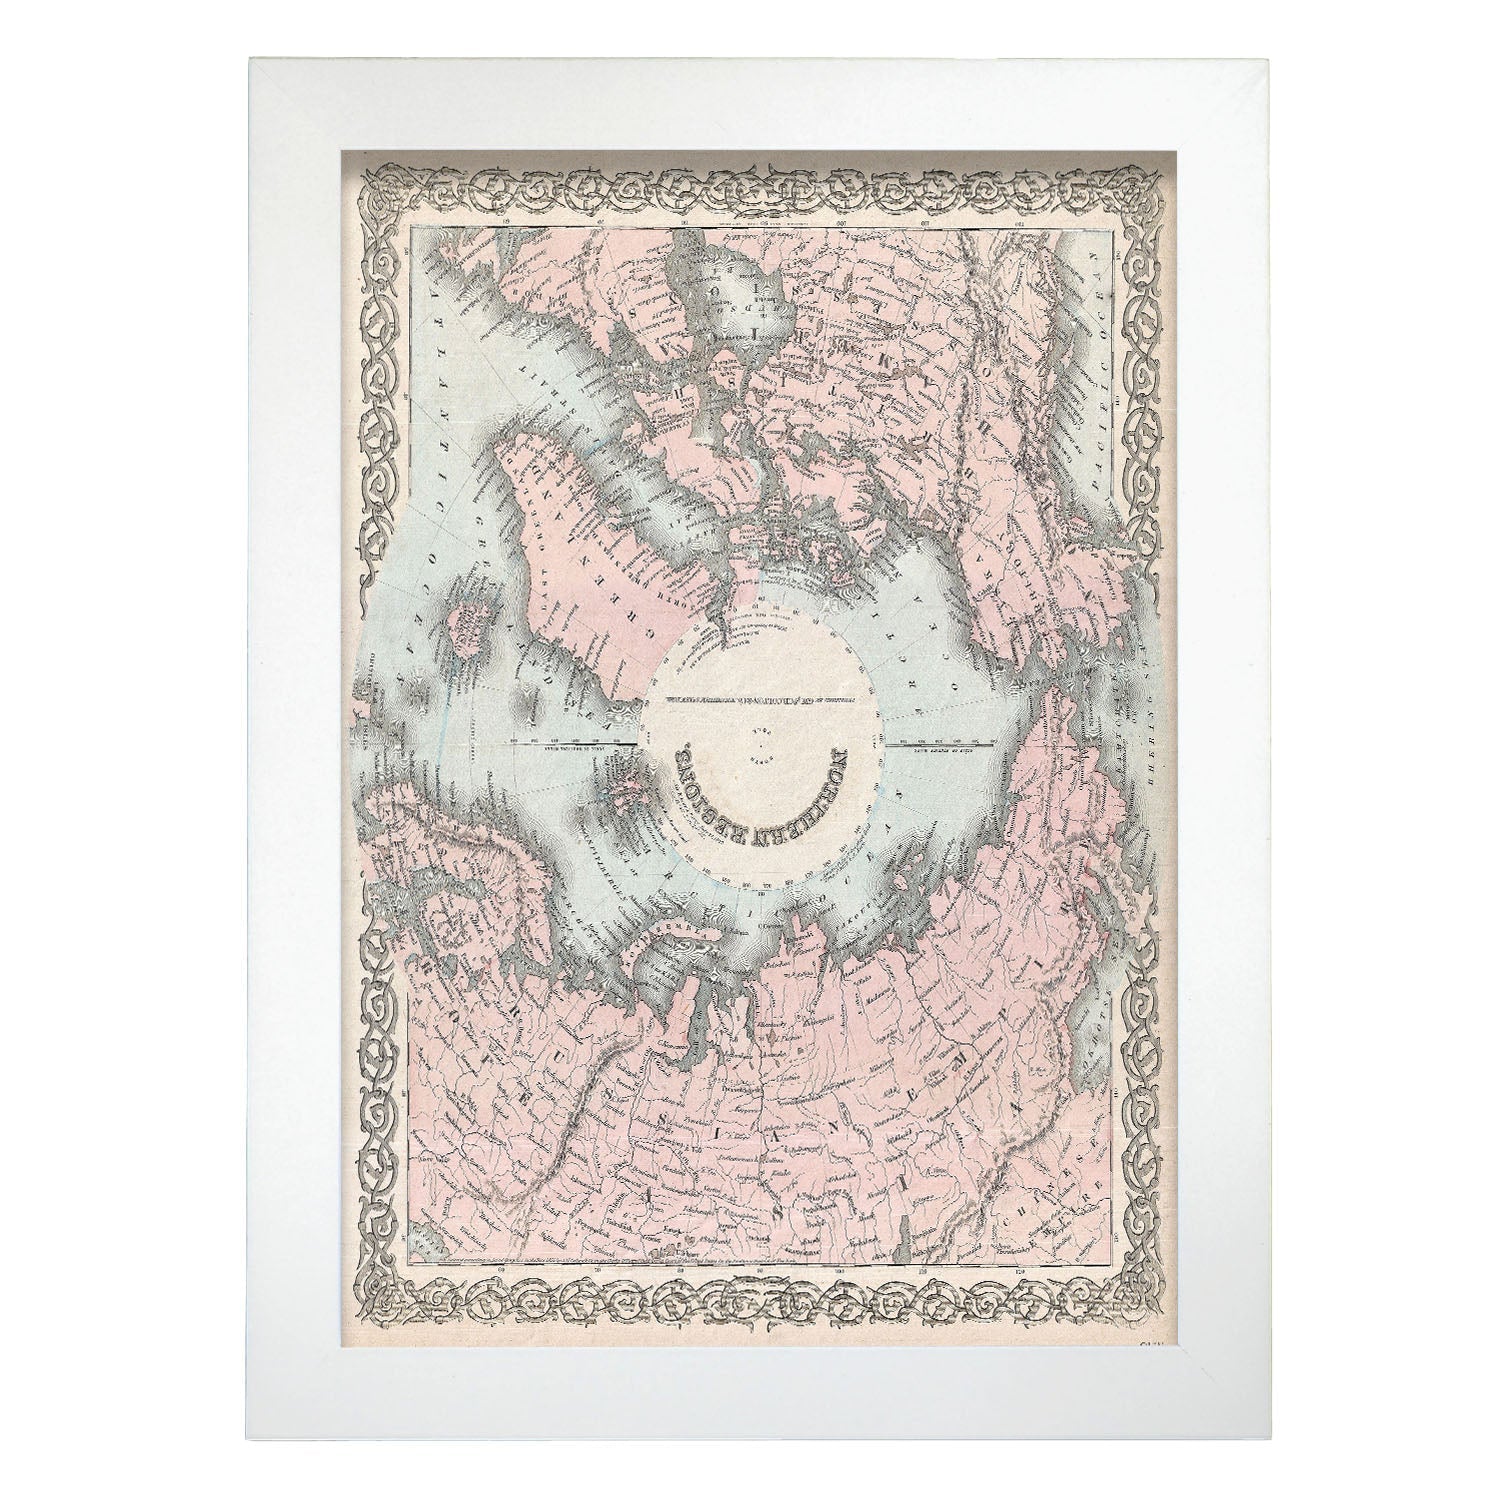 1872_Colton_Map_of_the_North_Pole_or_Arctic_-1855-Artwork-Nacnic-A4-Marco Blanco-Nacnic Estudio SL